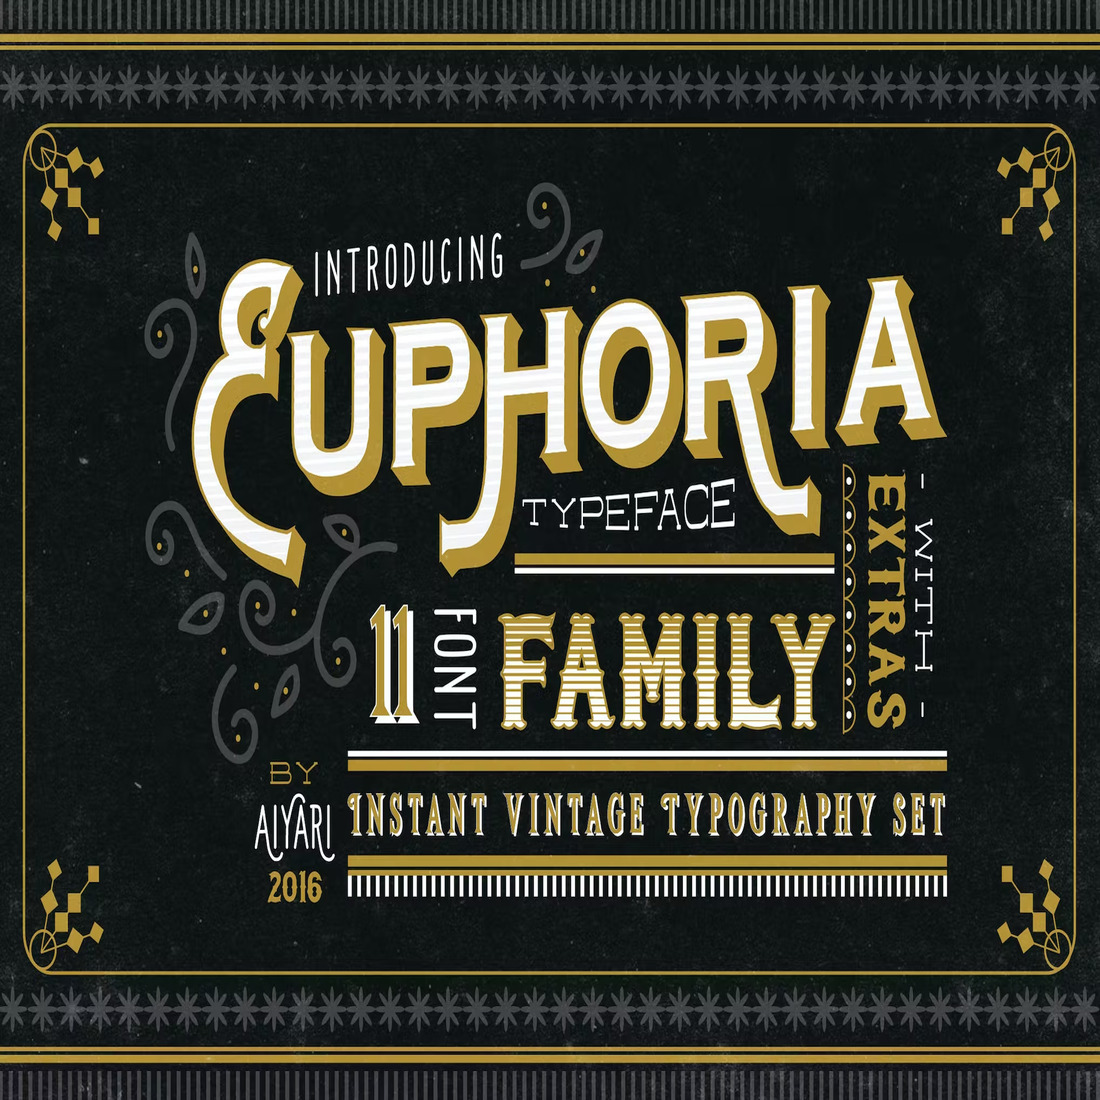 Euphoria Font Family cover image.